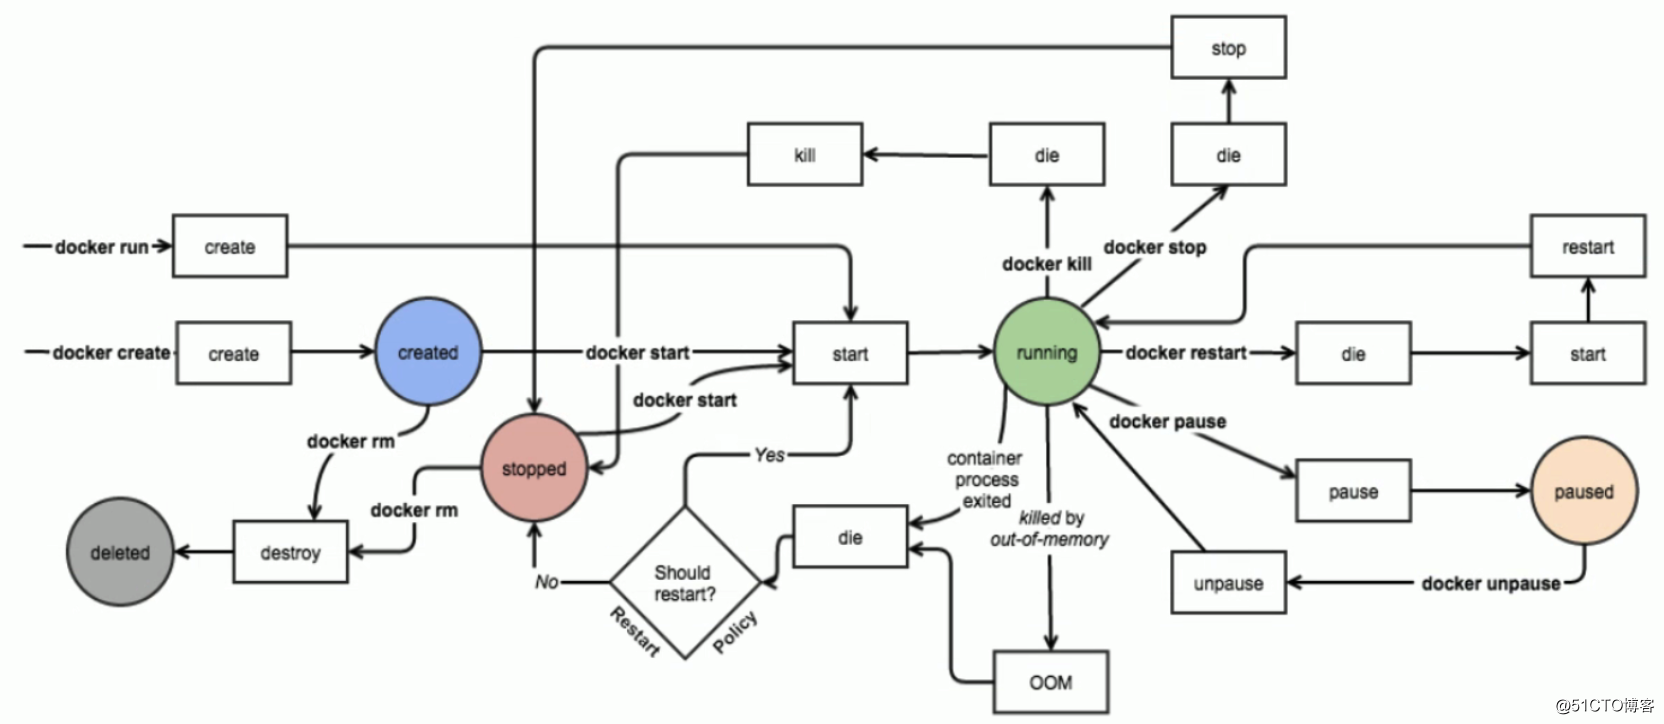 Comandos básicos de Docker y ciclo de vida y estado del contenedor